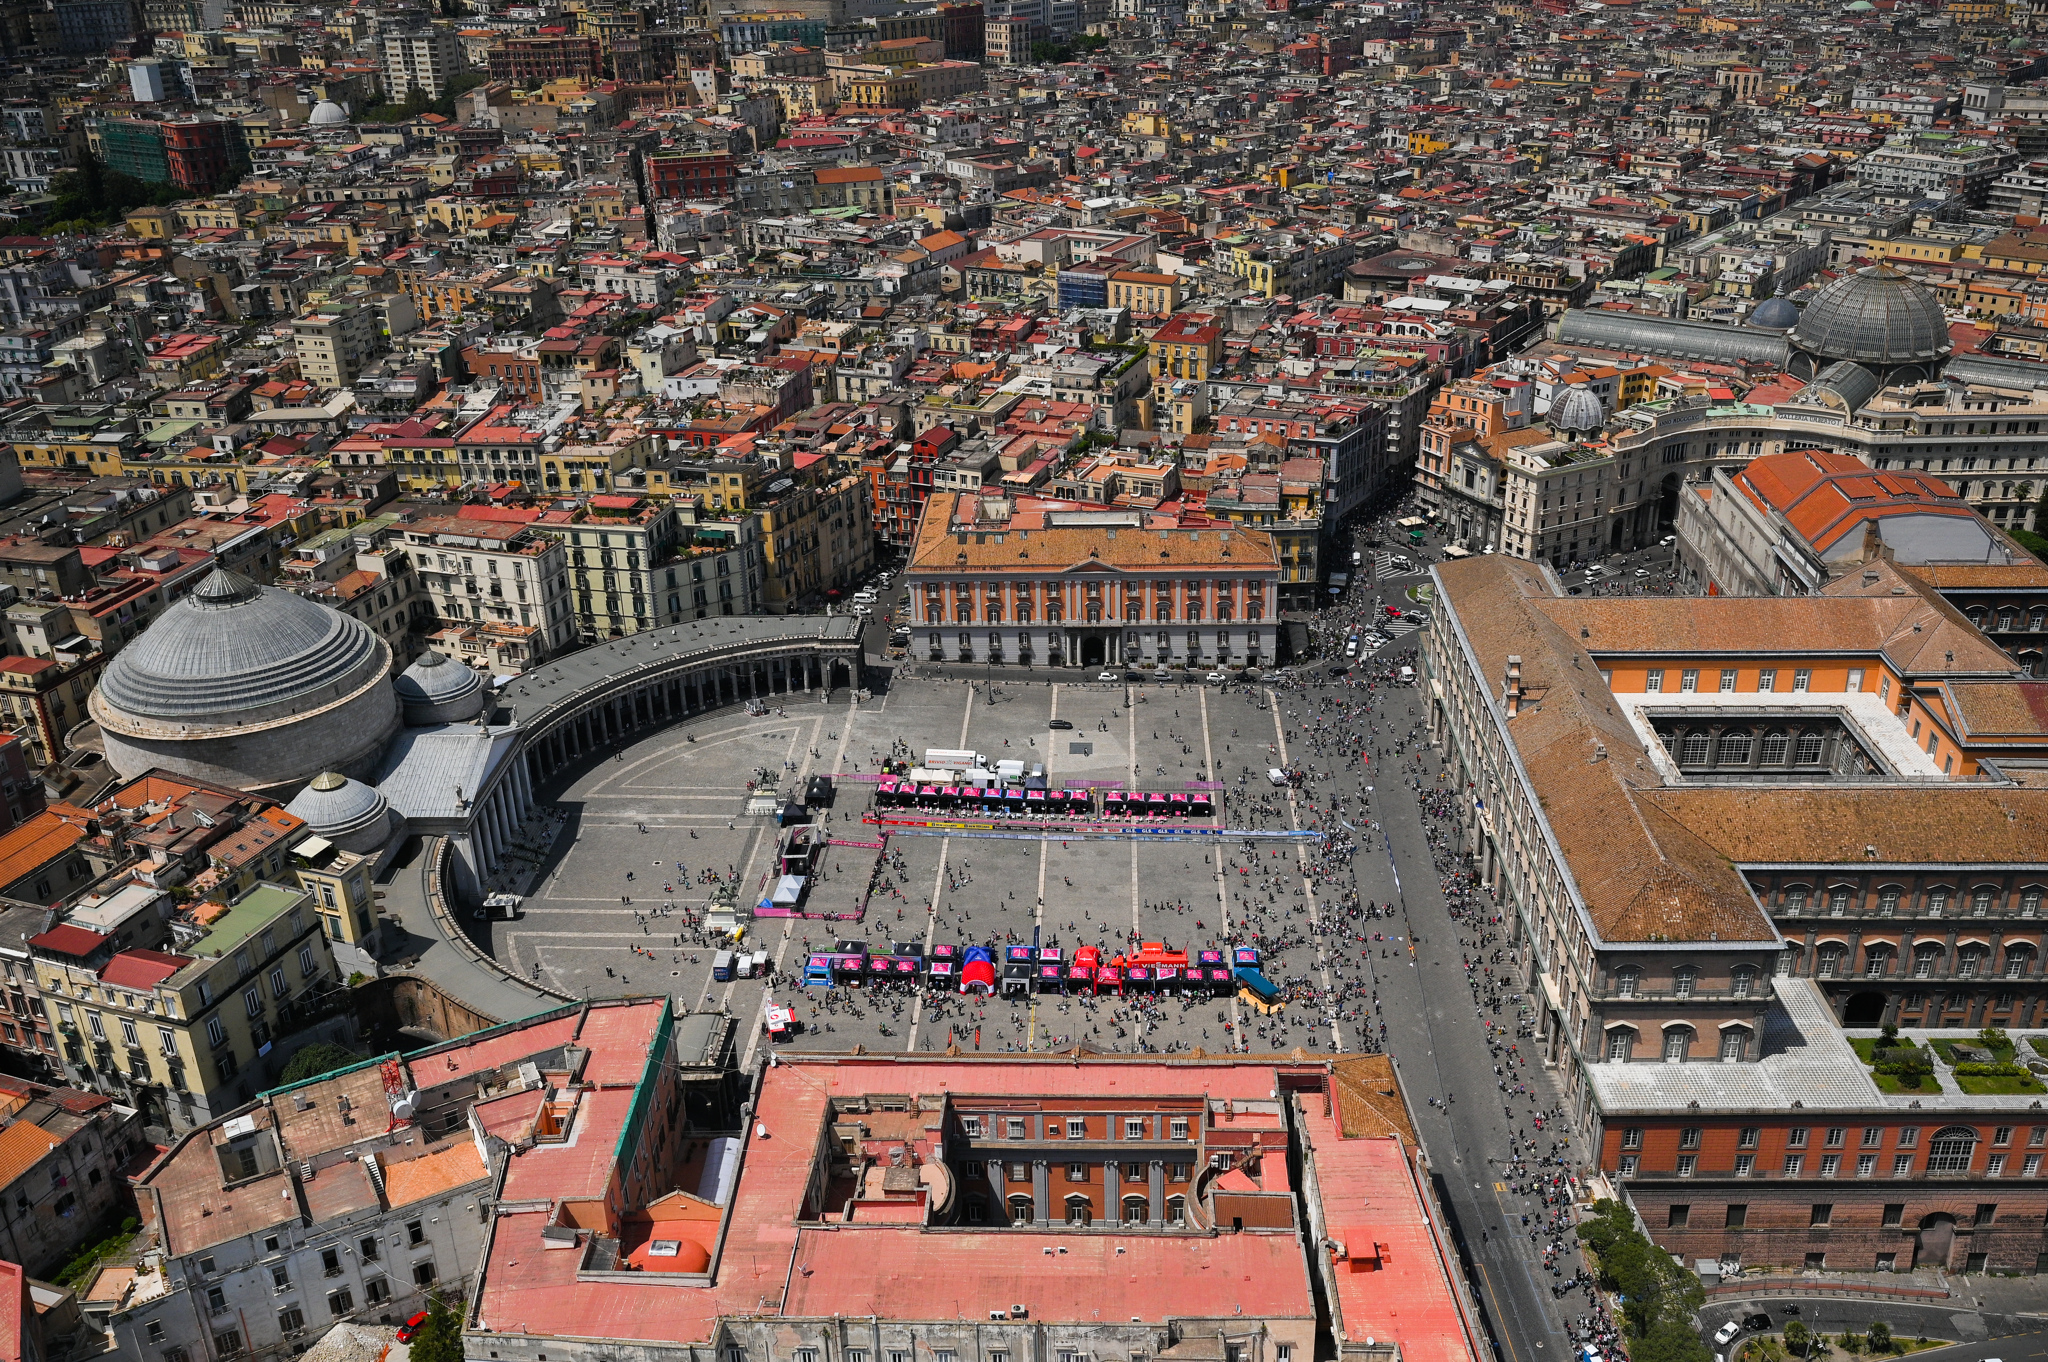 La carovana rosa torna a Napoli nel 2023: sarà la sesta tappa del Giro d’Italia